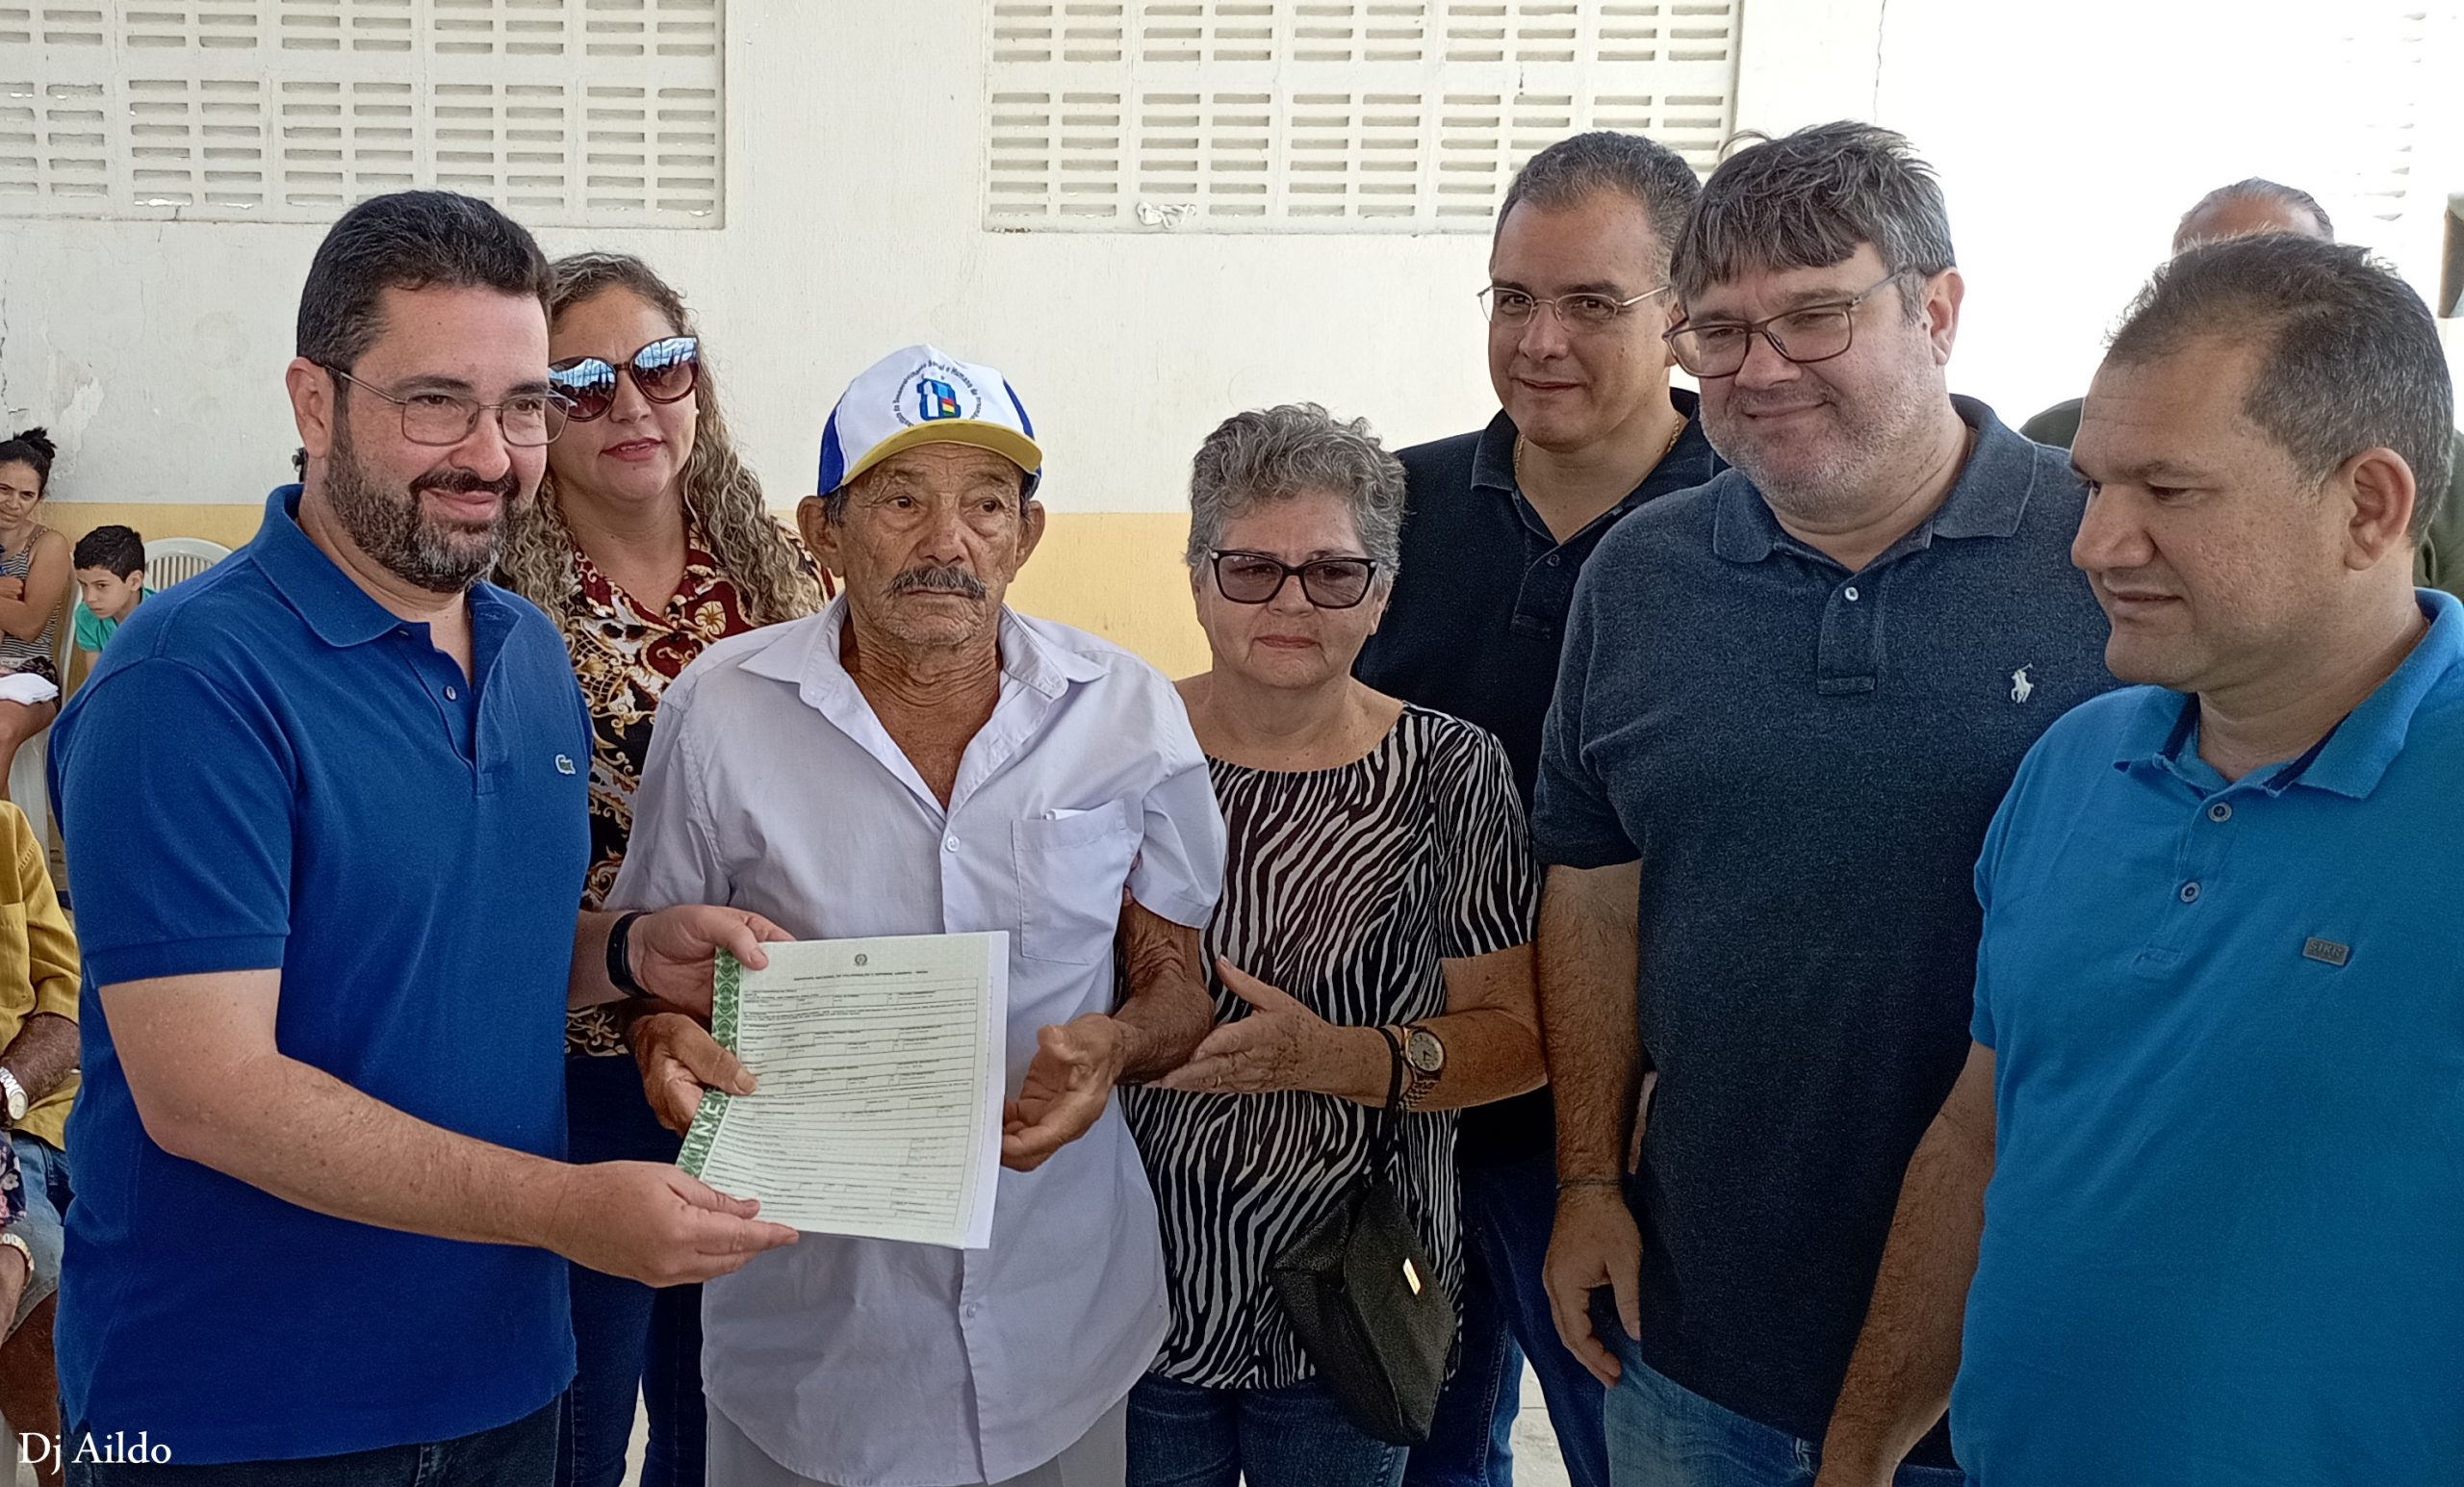 Cerro Corá: Famílias do Assentamento Santa Clara II recebem do governo federal titulo de terra, nesta quarta-feira, 30